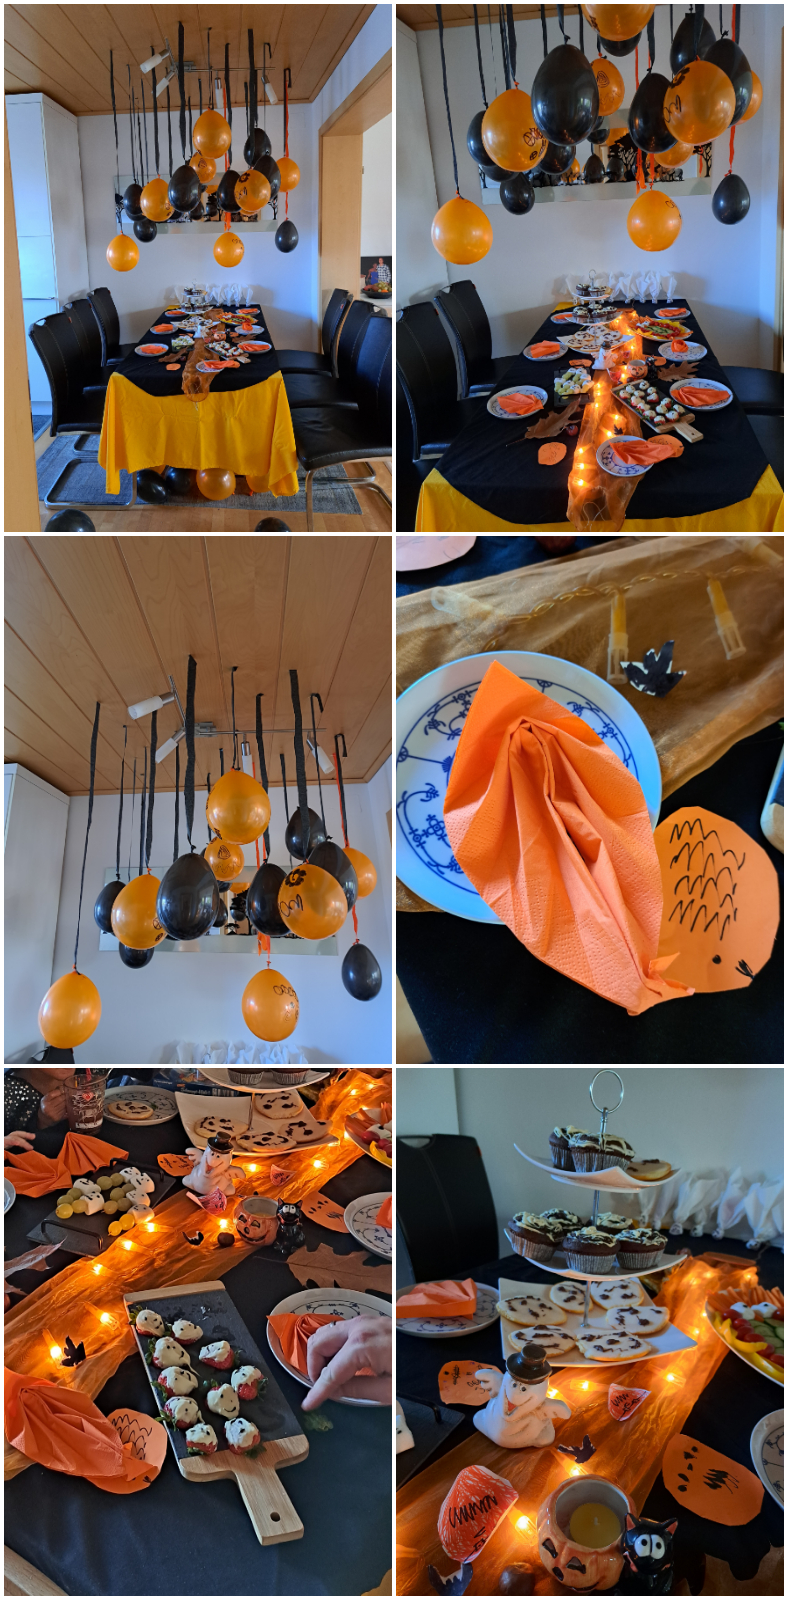 Halloween-Deko: Kreativ gestaltete Dekorationen in Schwarz und Orange, darunter luftige Ballons, Herbstblätter, Kastanien und ein leuchtender Tisch, um die perfekte gruselige Atmosphäre zu schaffen.